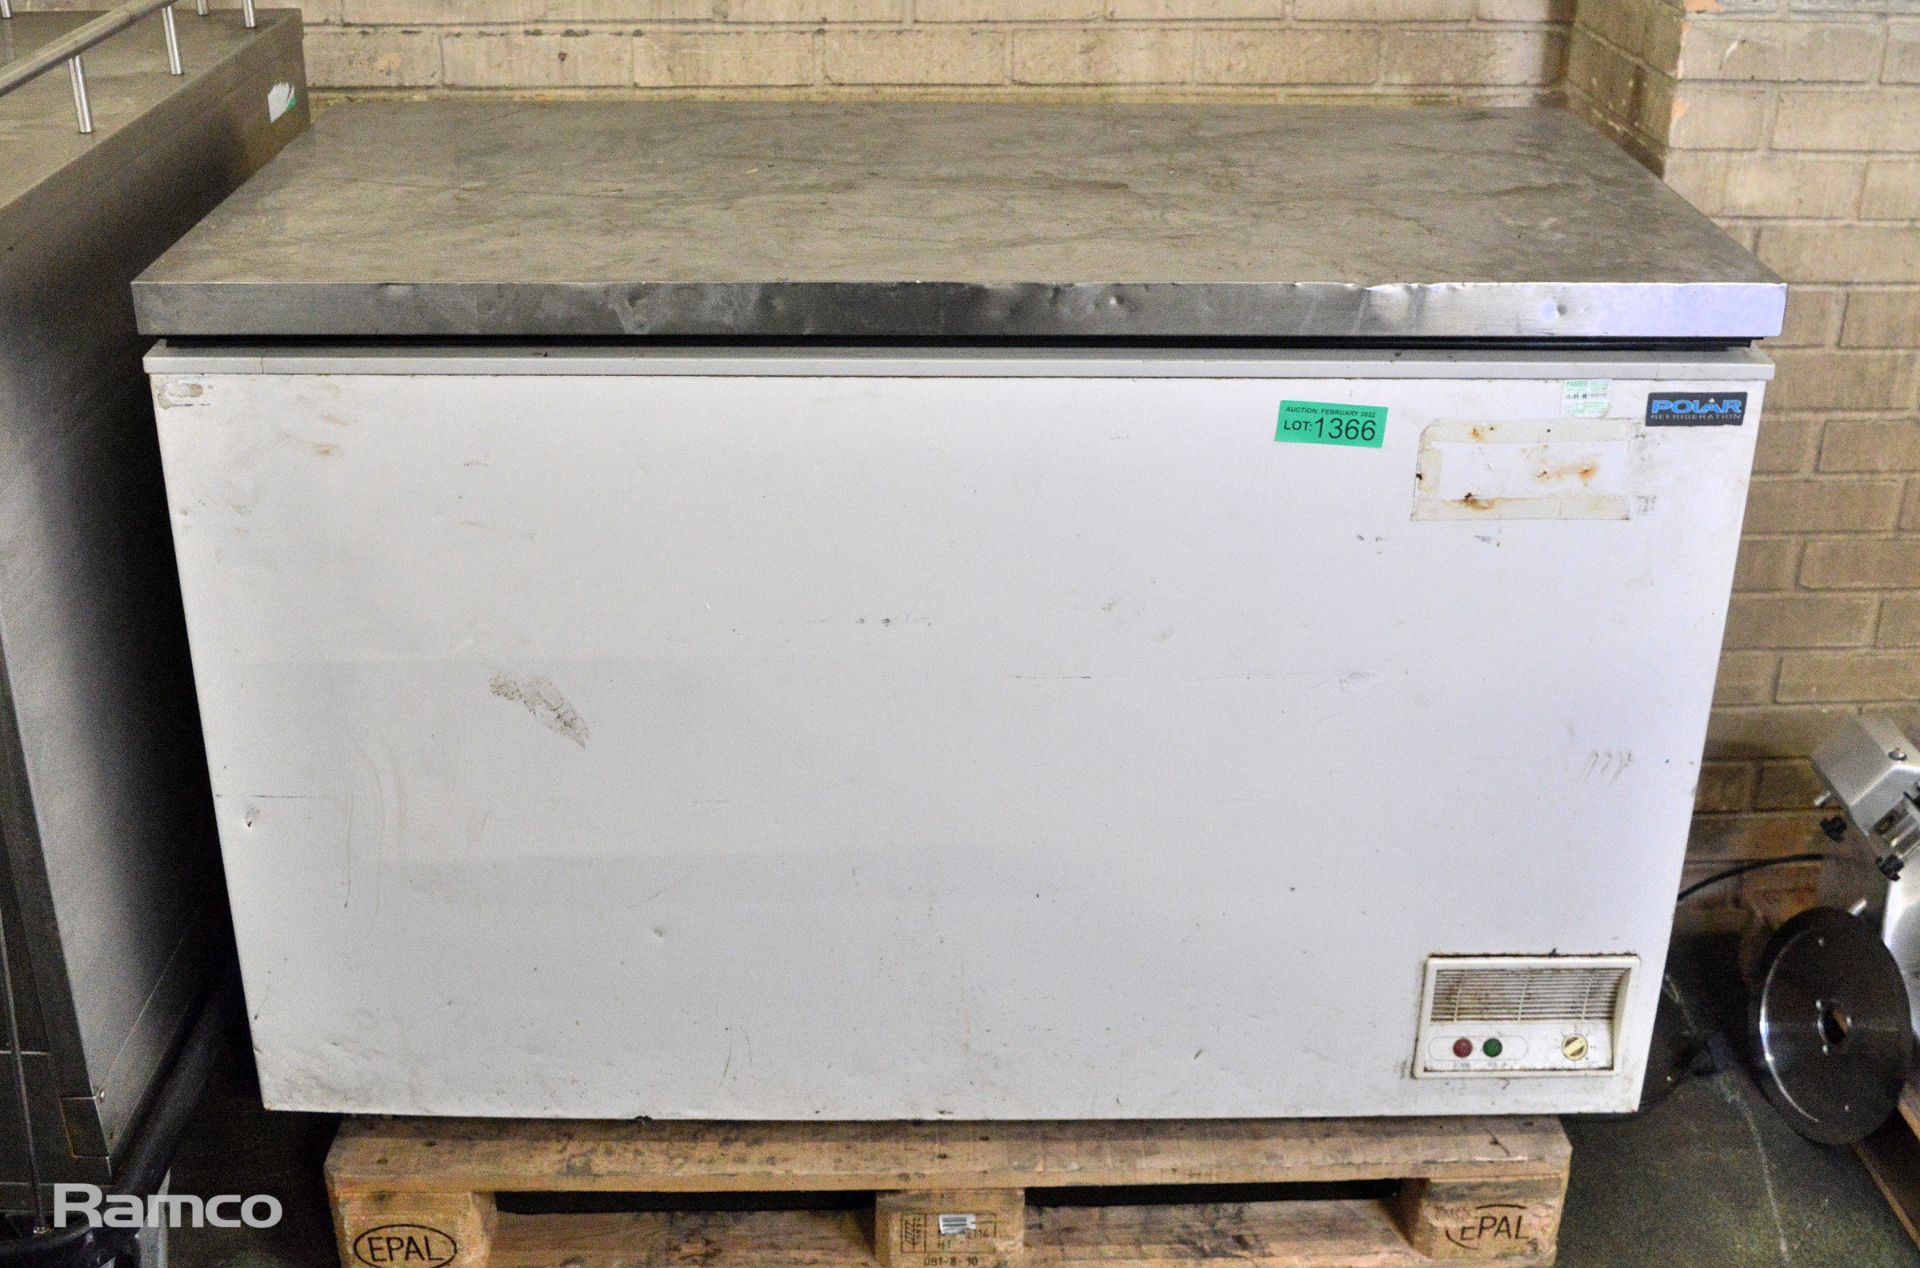 Polar CE210-B 230V chest freezer - Dented Lid